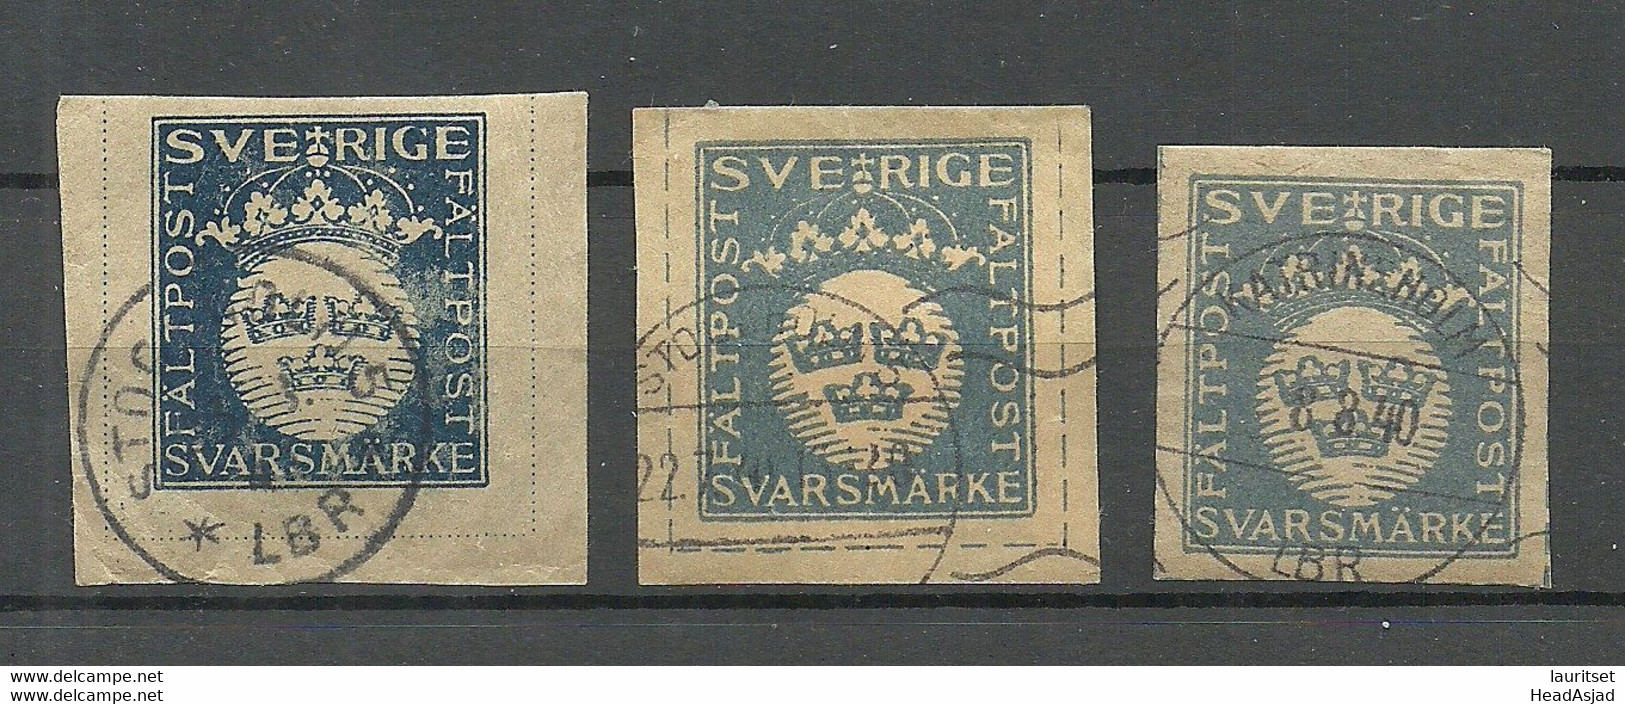 Sweden Schweden 1930-1942 Feldpost Field Post Fältpost O Militärpostmarken - Militärmarken